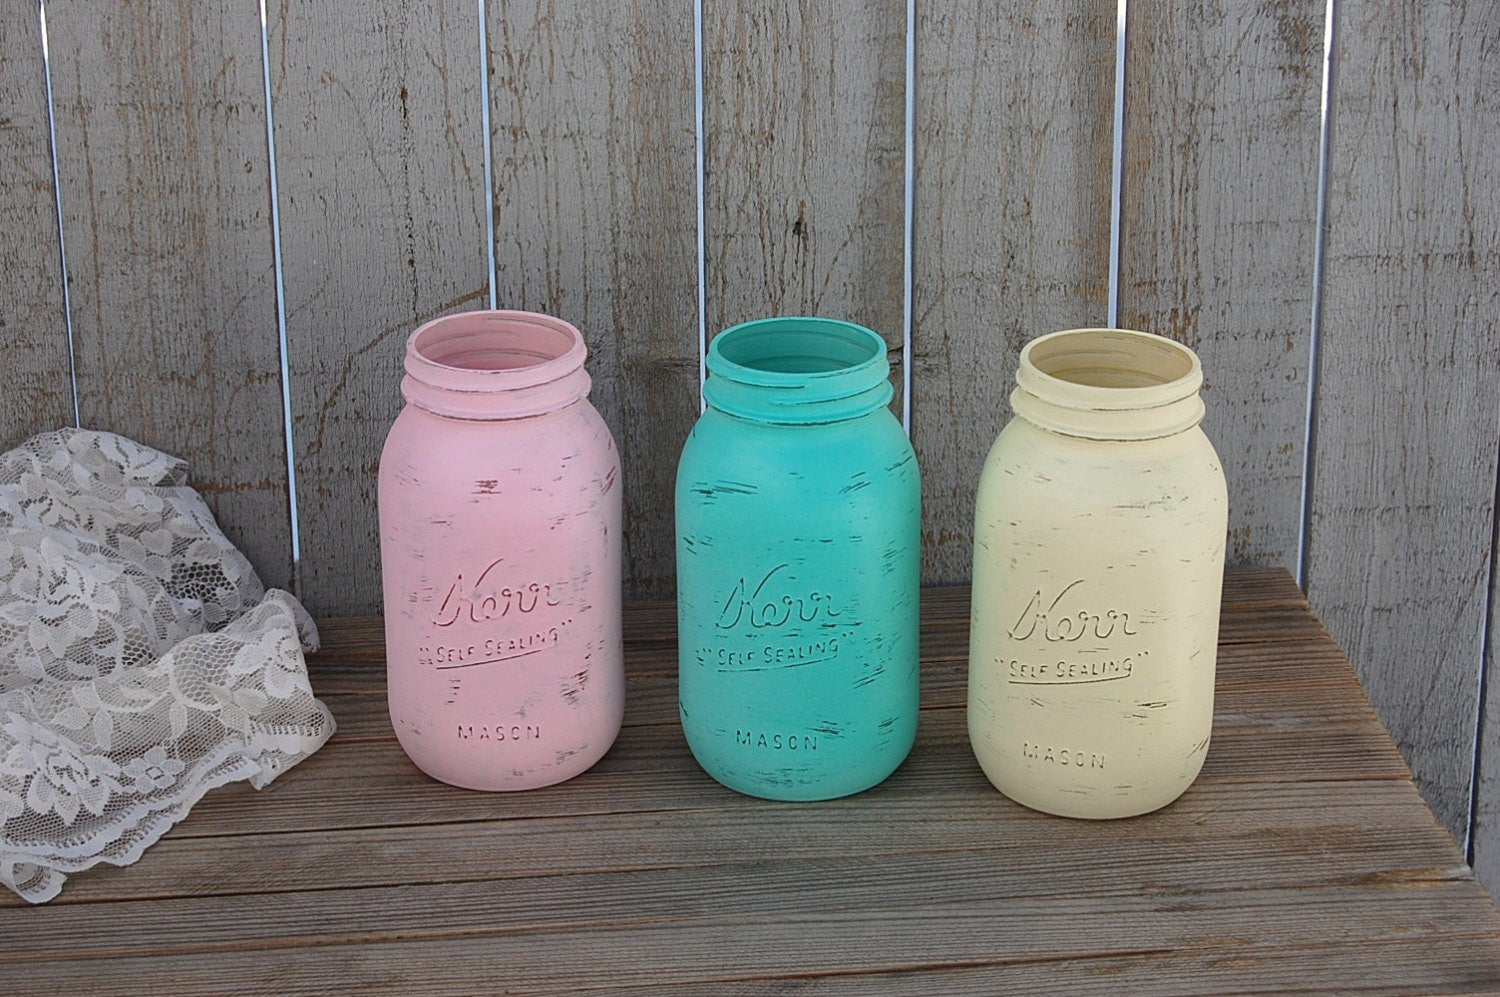 Pastel painted mason jars - The Vintage Artistry